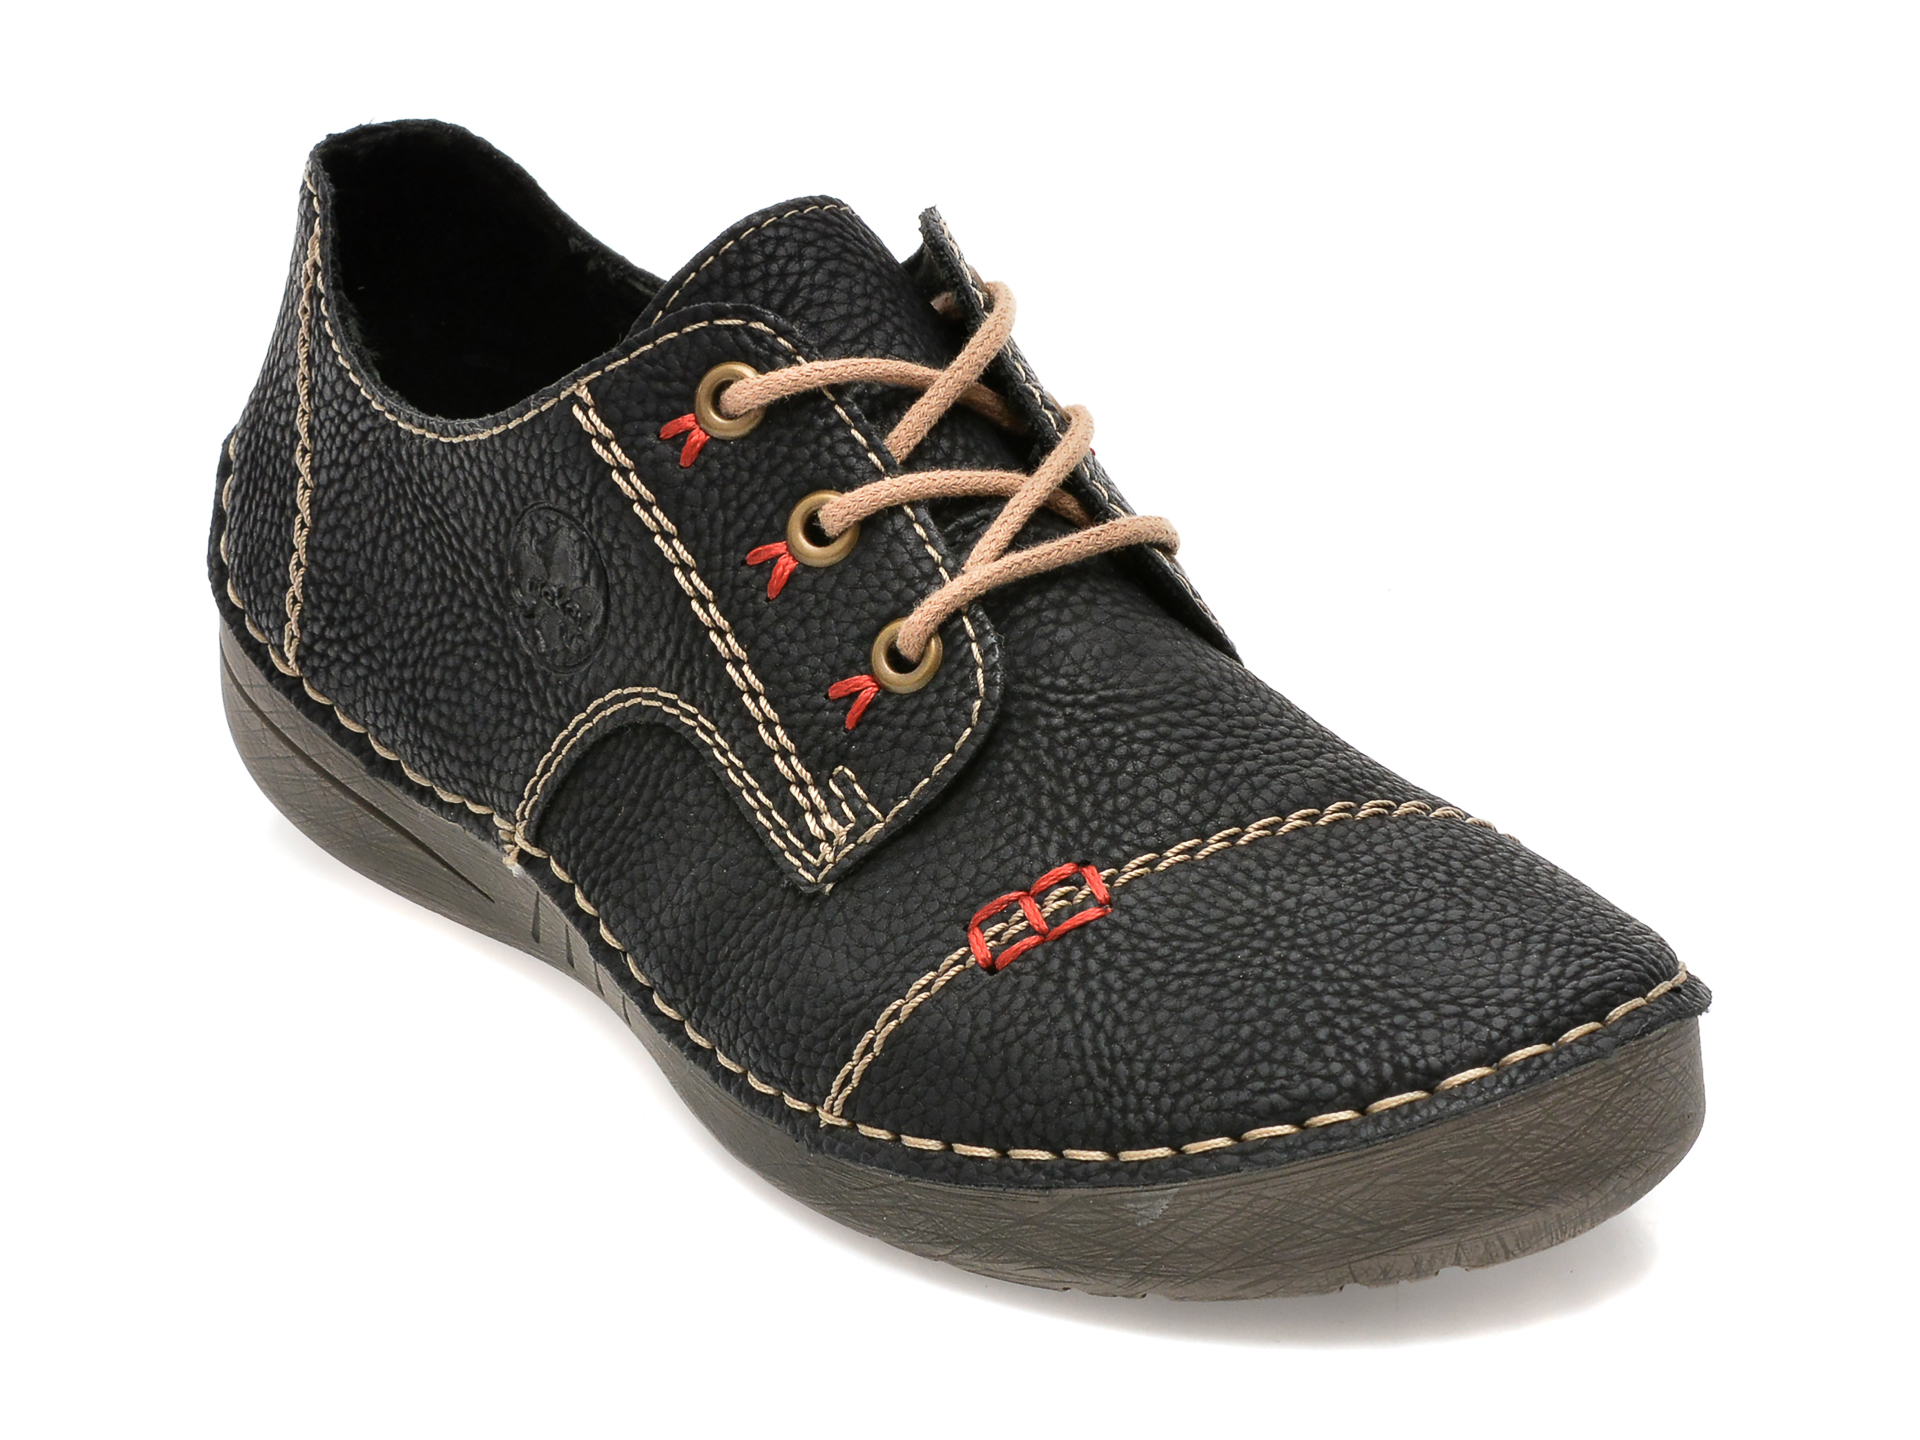 Pantofi RIEKER negri, 52520, din piele ecologica femei 2023-02-03